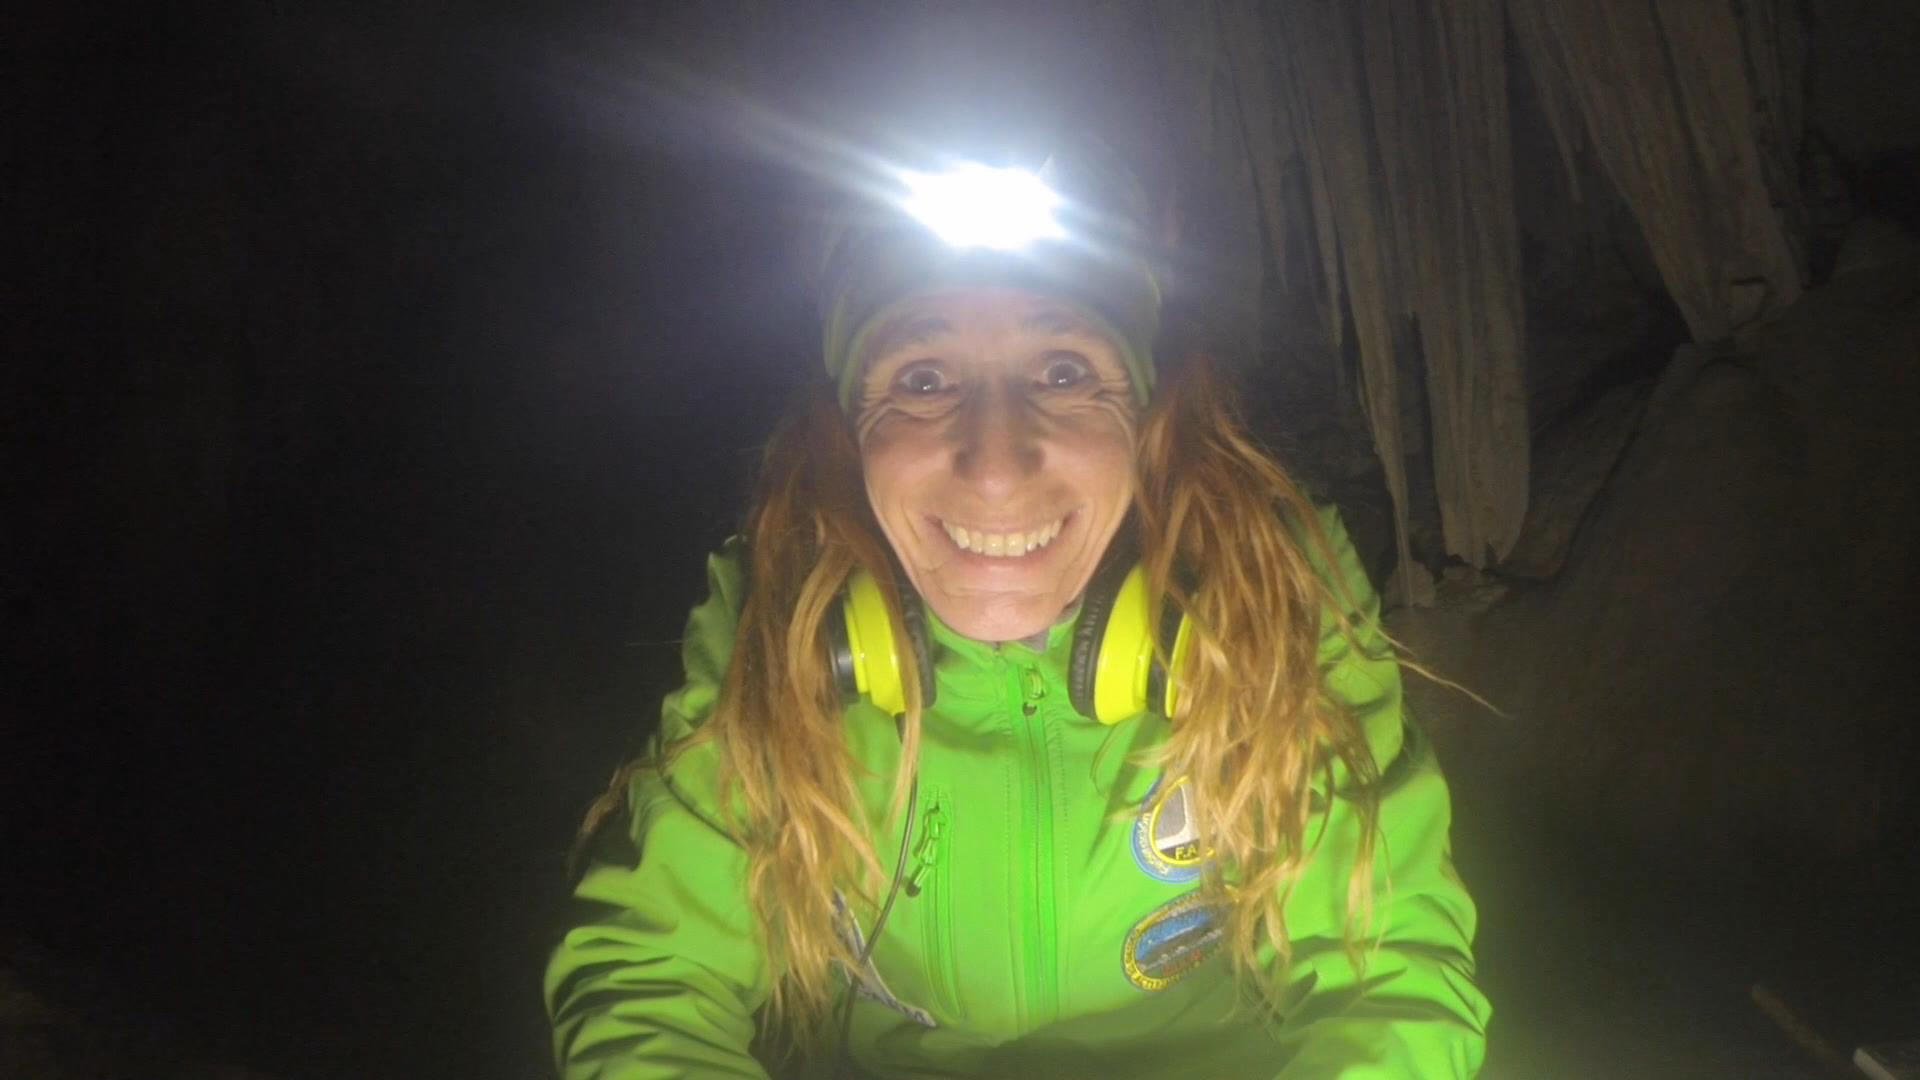 Récord bajo tierra: 500 días en una cueva sin contacto exterior